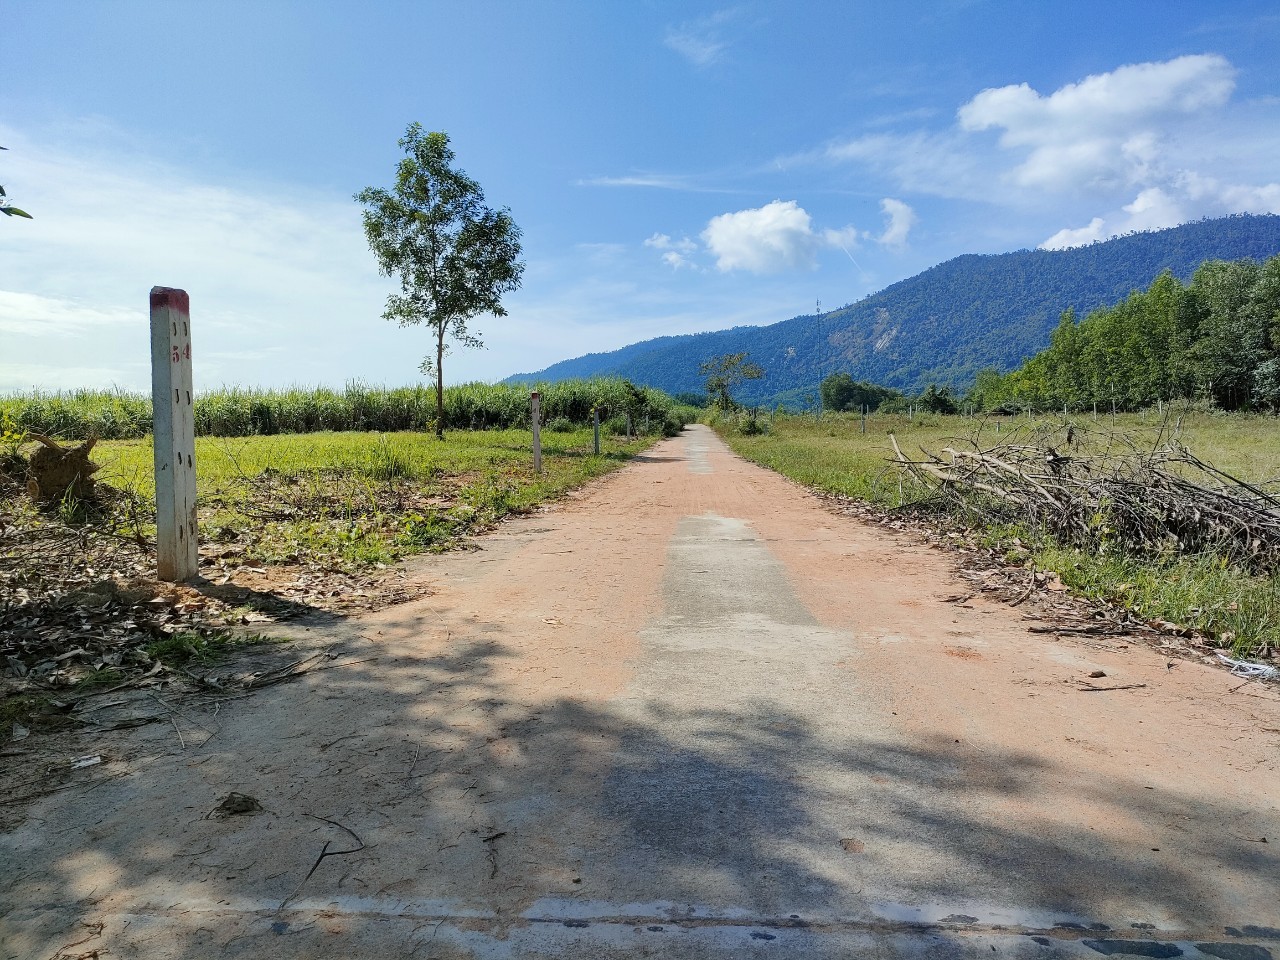 Bán đất vườn Khánh Hiệp giá rẻ phù hợp quy hoạch thổ cư gần Tỉnh Lộ 8C